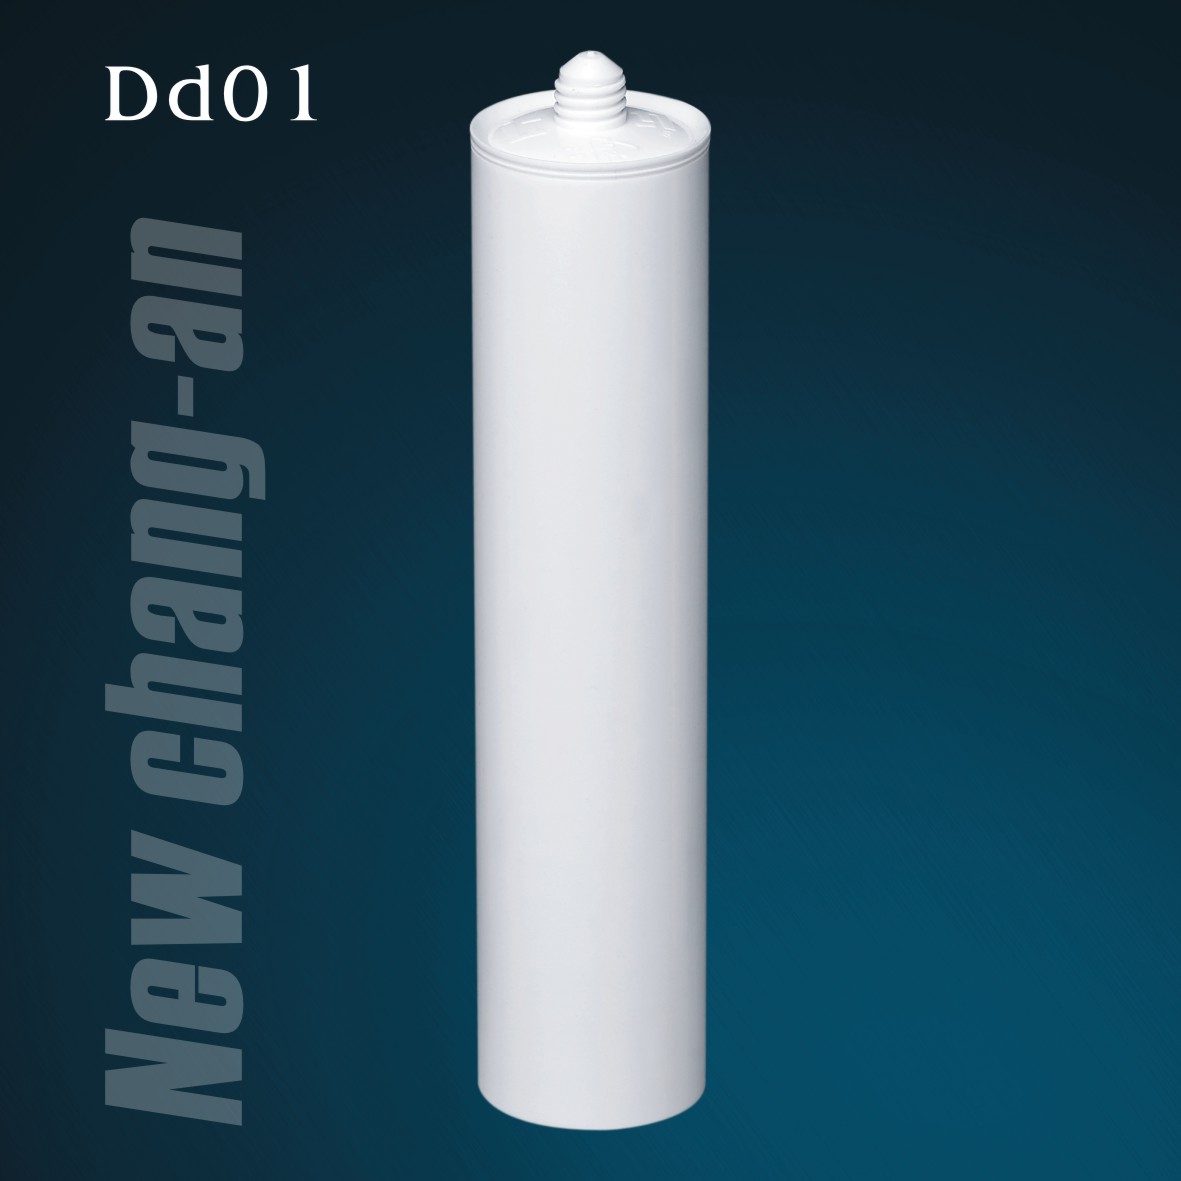 Cartouche en plastique HDPE vide de 300 ml pour mastic silicone Dd01